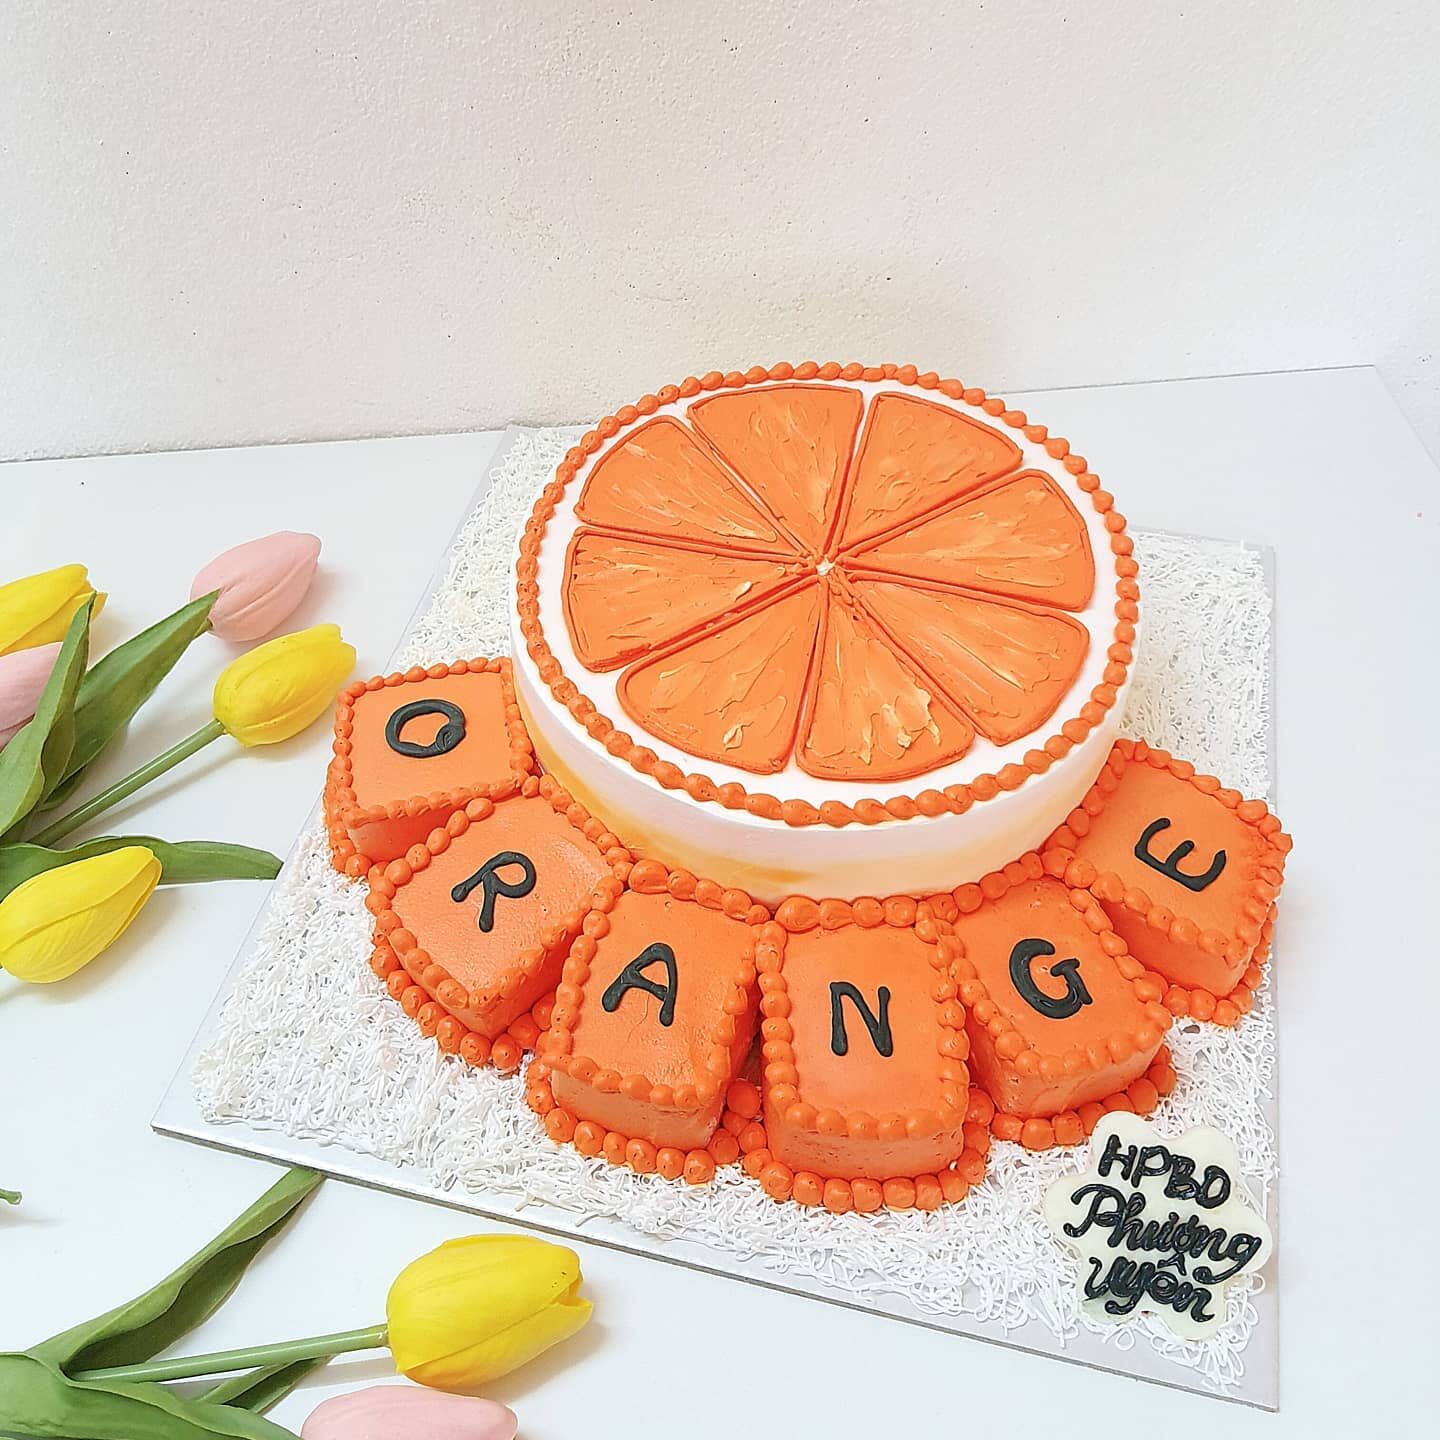 Sáng tạo bánh sinh nhật vẽ quả cam độc đáo và đẹp mắt